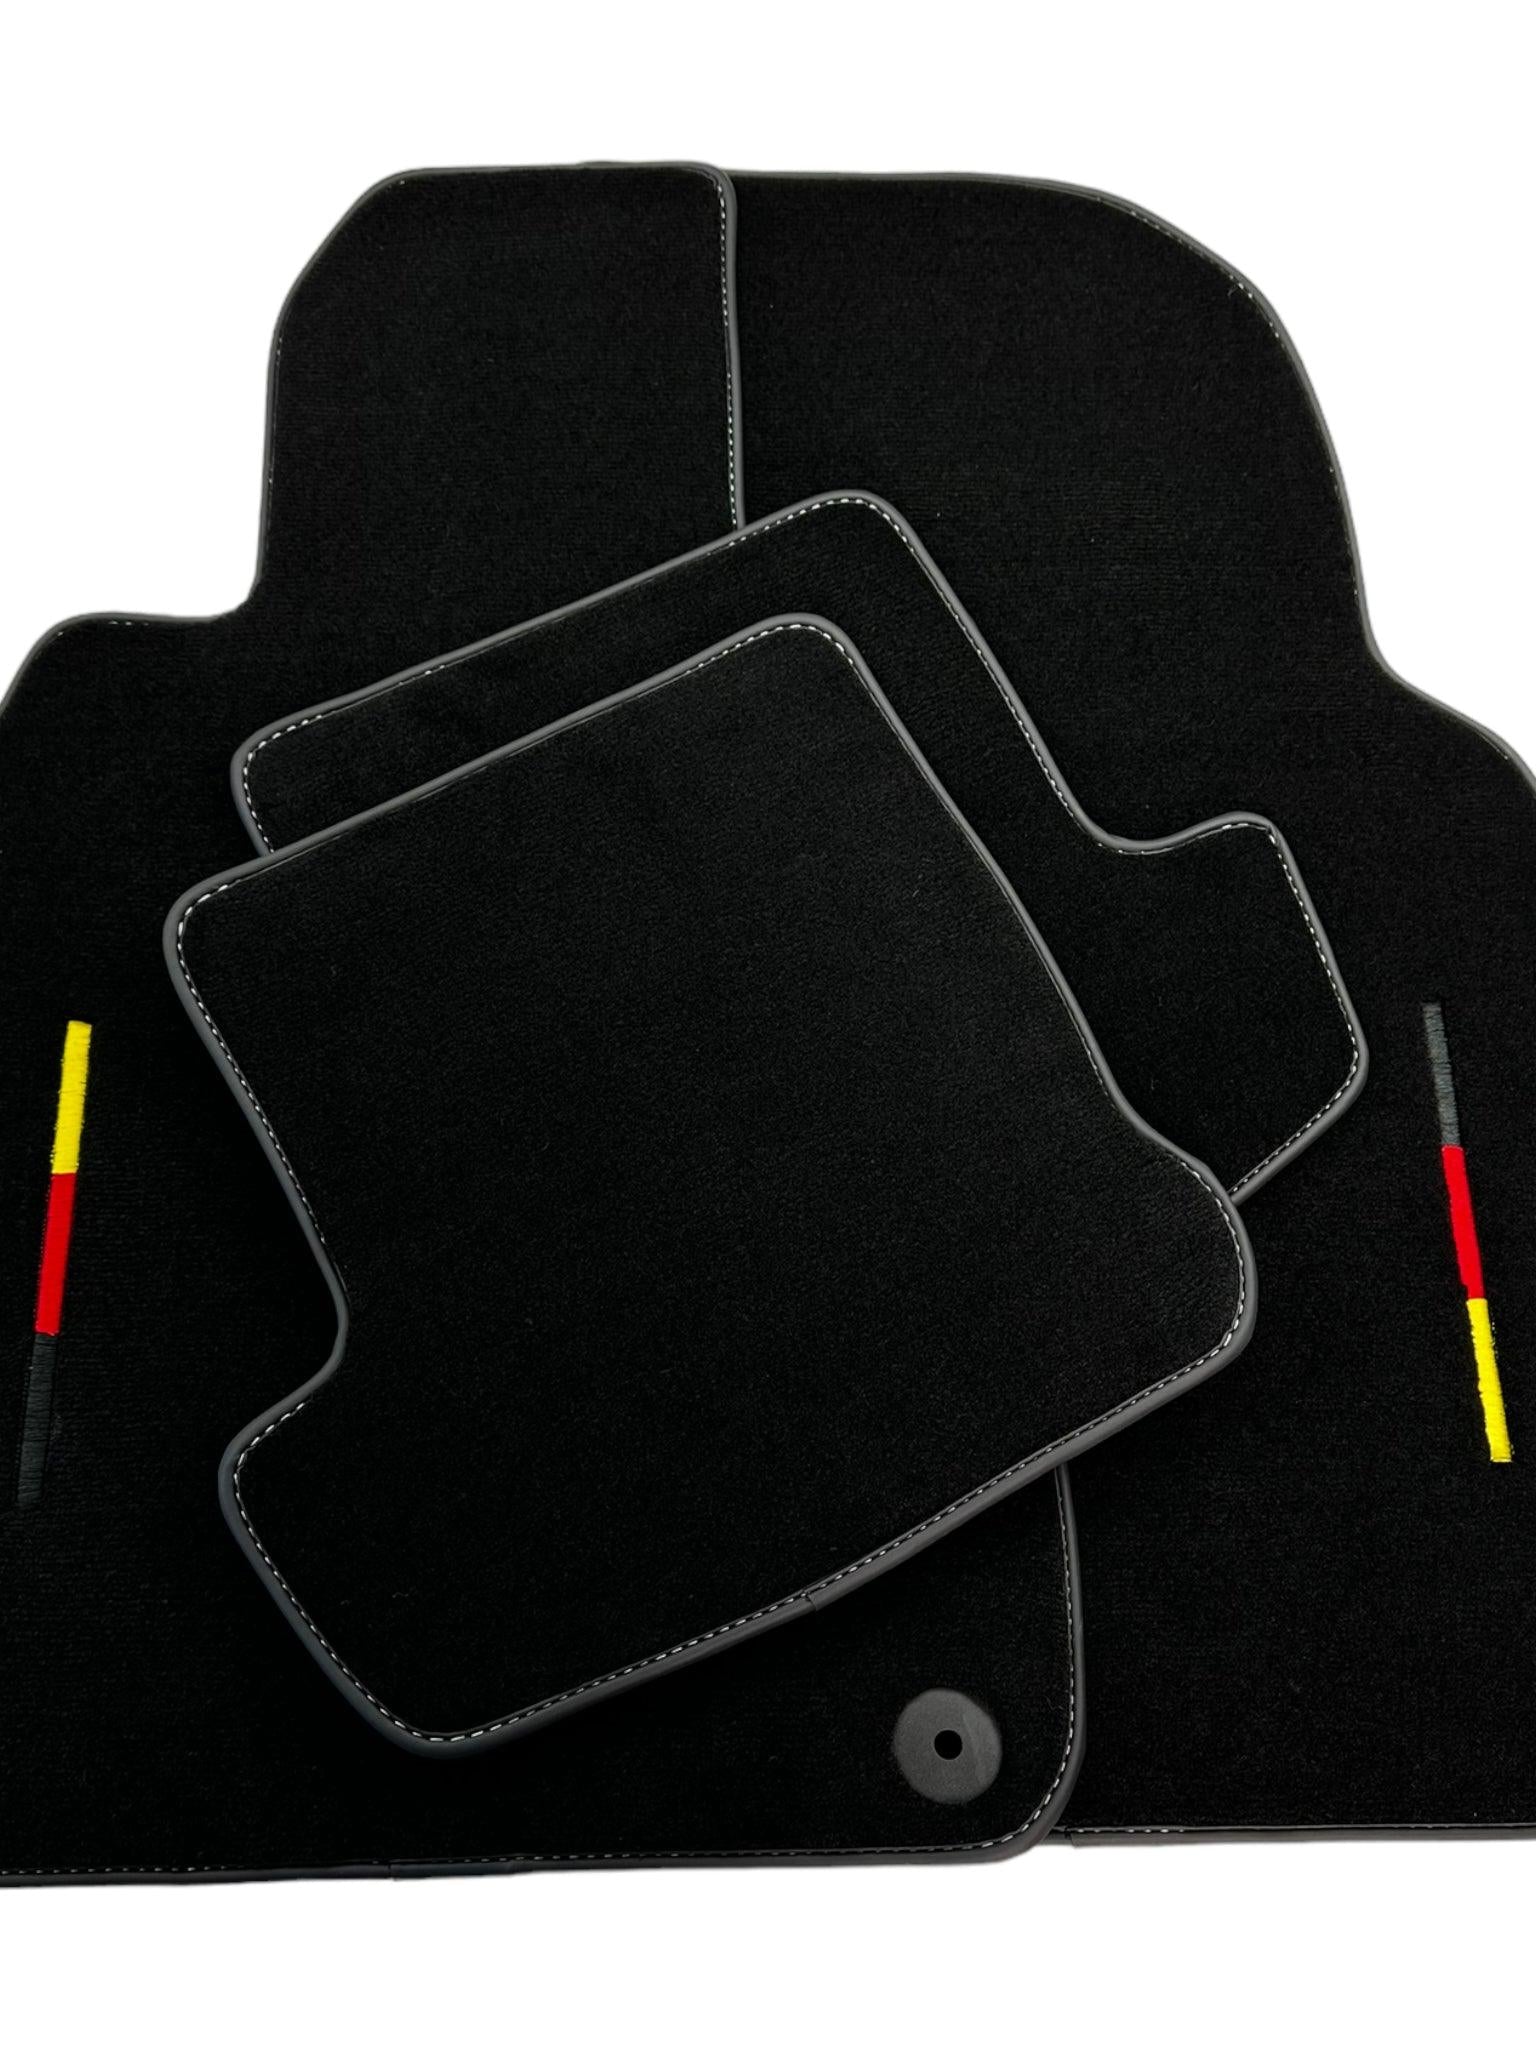 Black Floor Mats for Porsche Panamera (2009-2016) - AutoWin